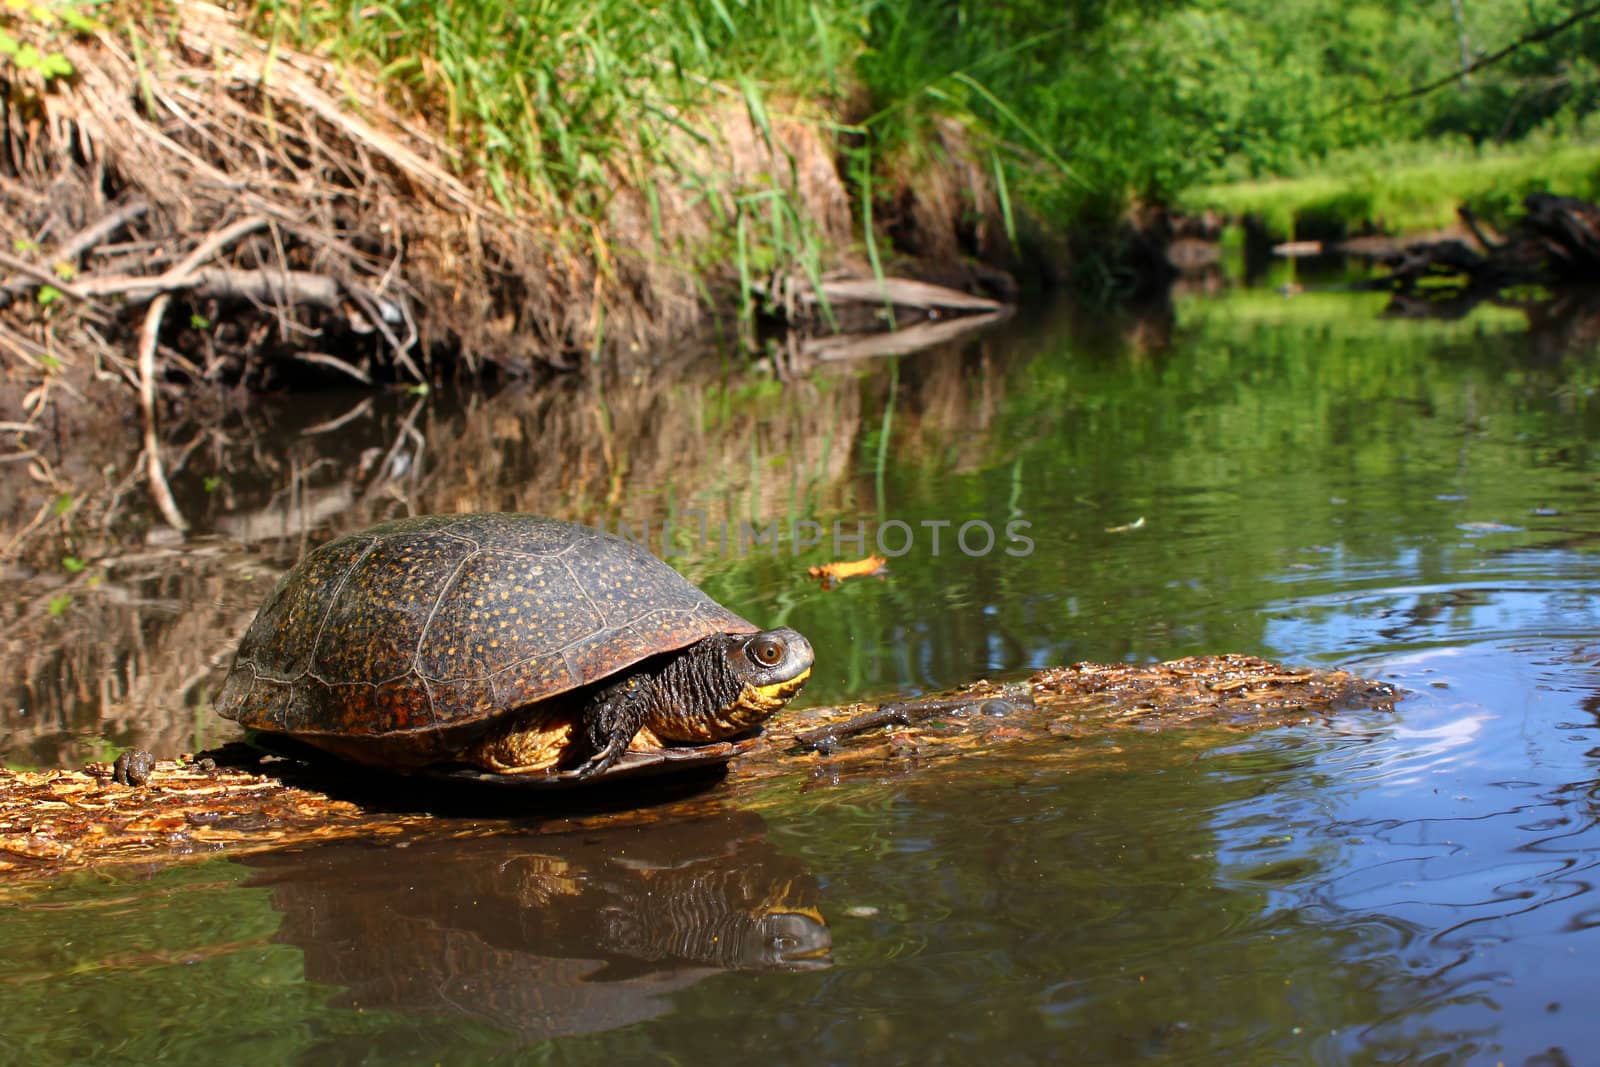 Blandings Turtle Basking on Log by Wirepec